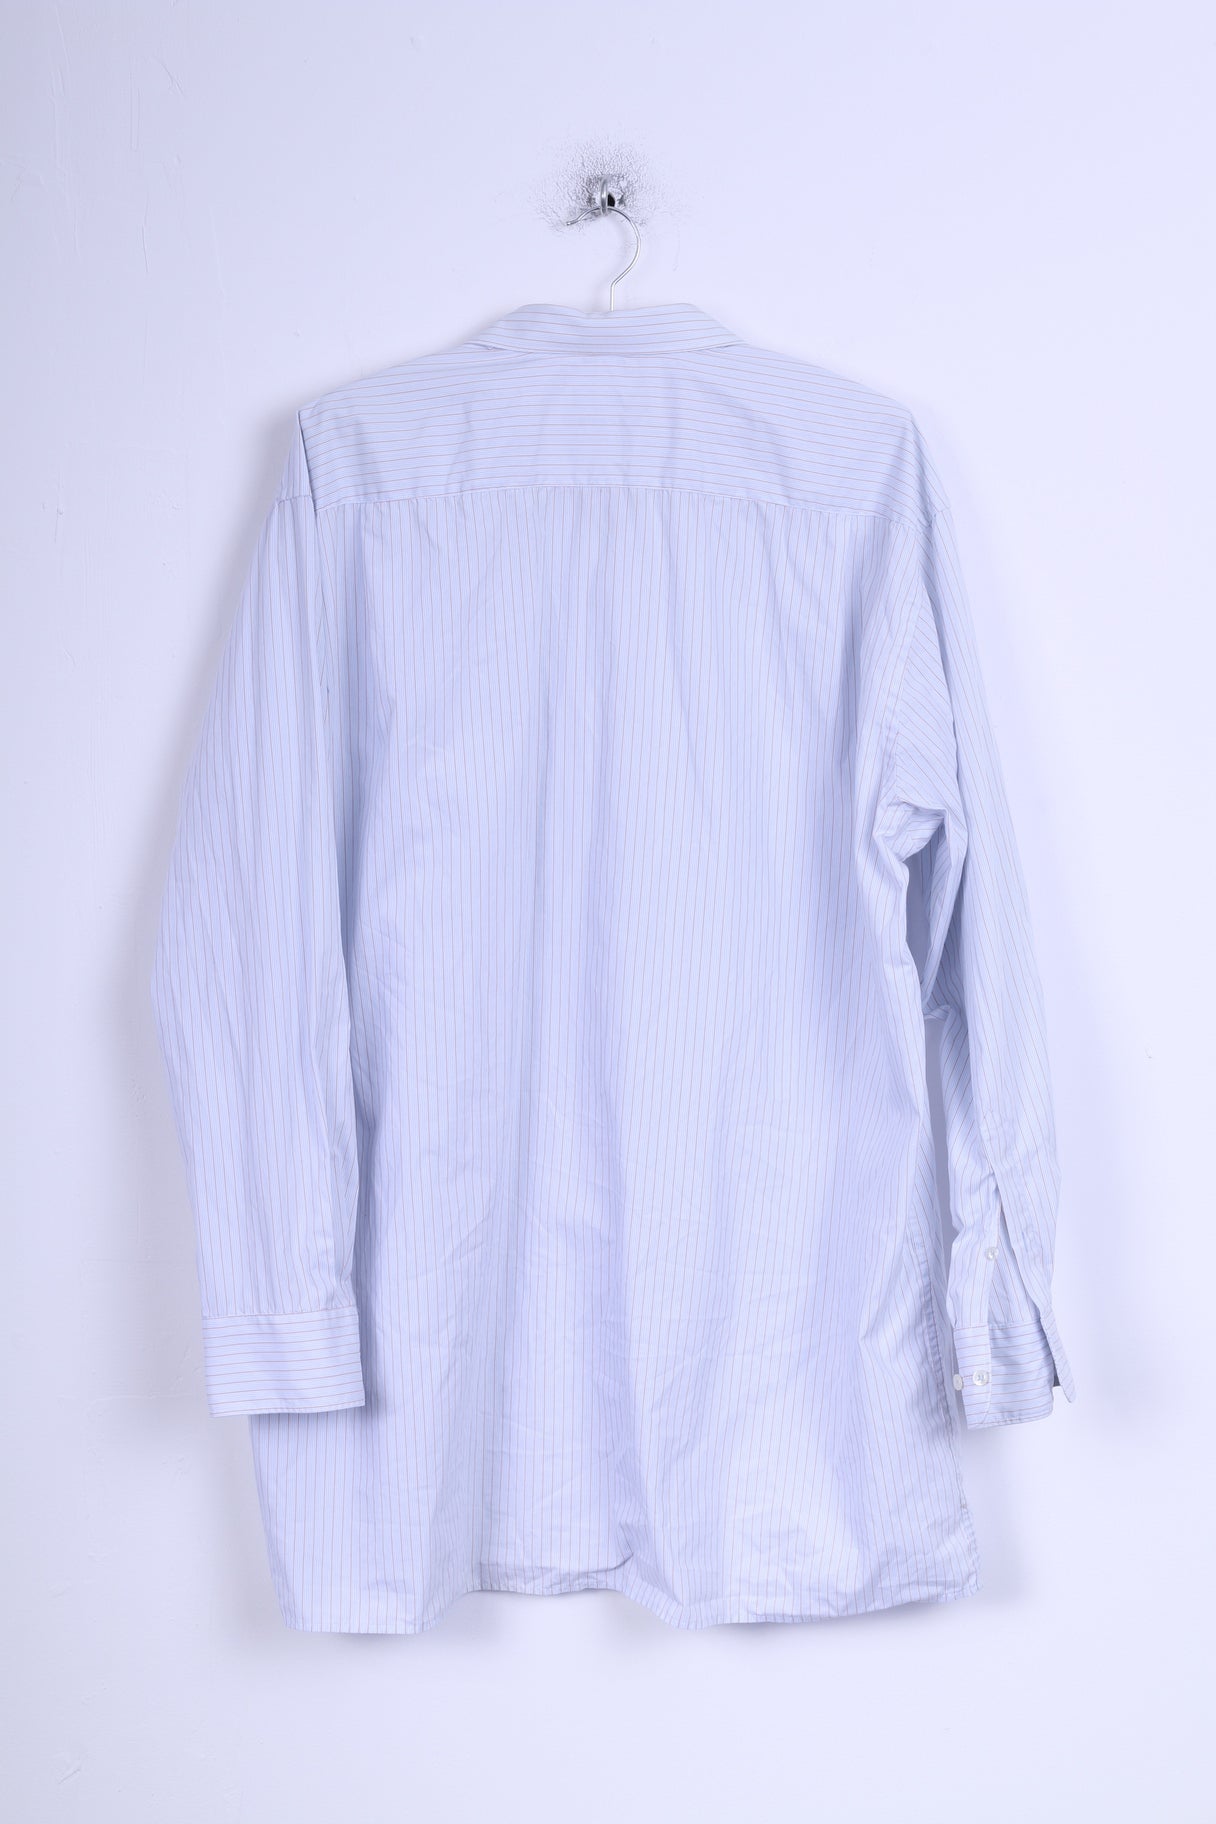 Seidensticker Mens 46 16 XXL Casual Shirt Blue Striped Cotton Long Sleeve